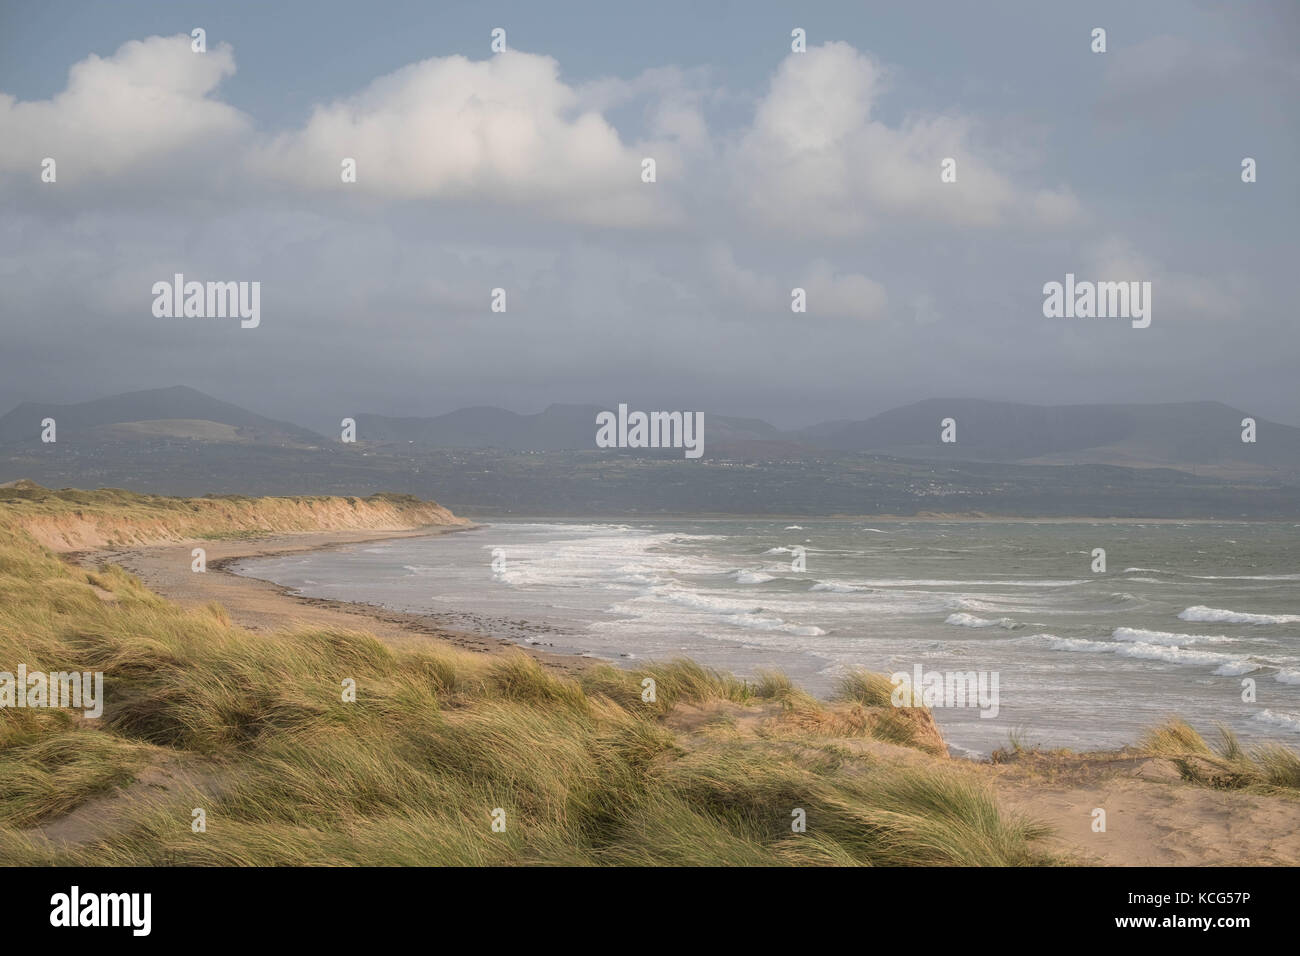 Dunes de sable, la plage et vagues avec les montagnes de Snowdonia dans la distance à la plage de newborough, Isle of Anglesey, au nord du Pays de Galles, Royaume-Uni. Banque D'Images